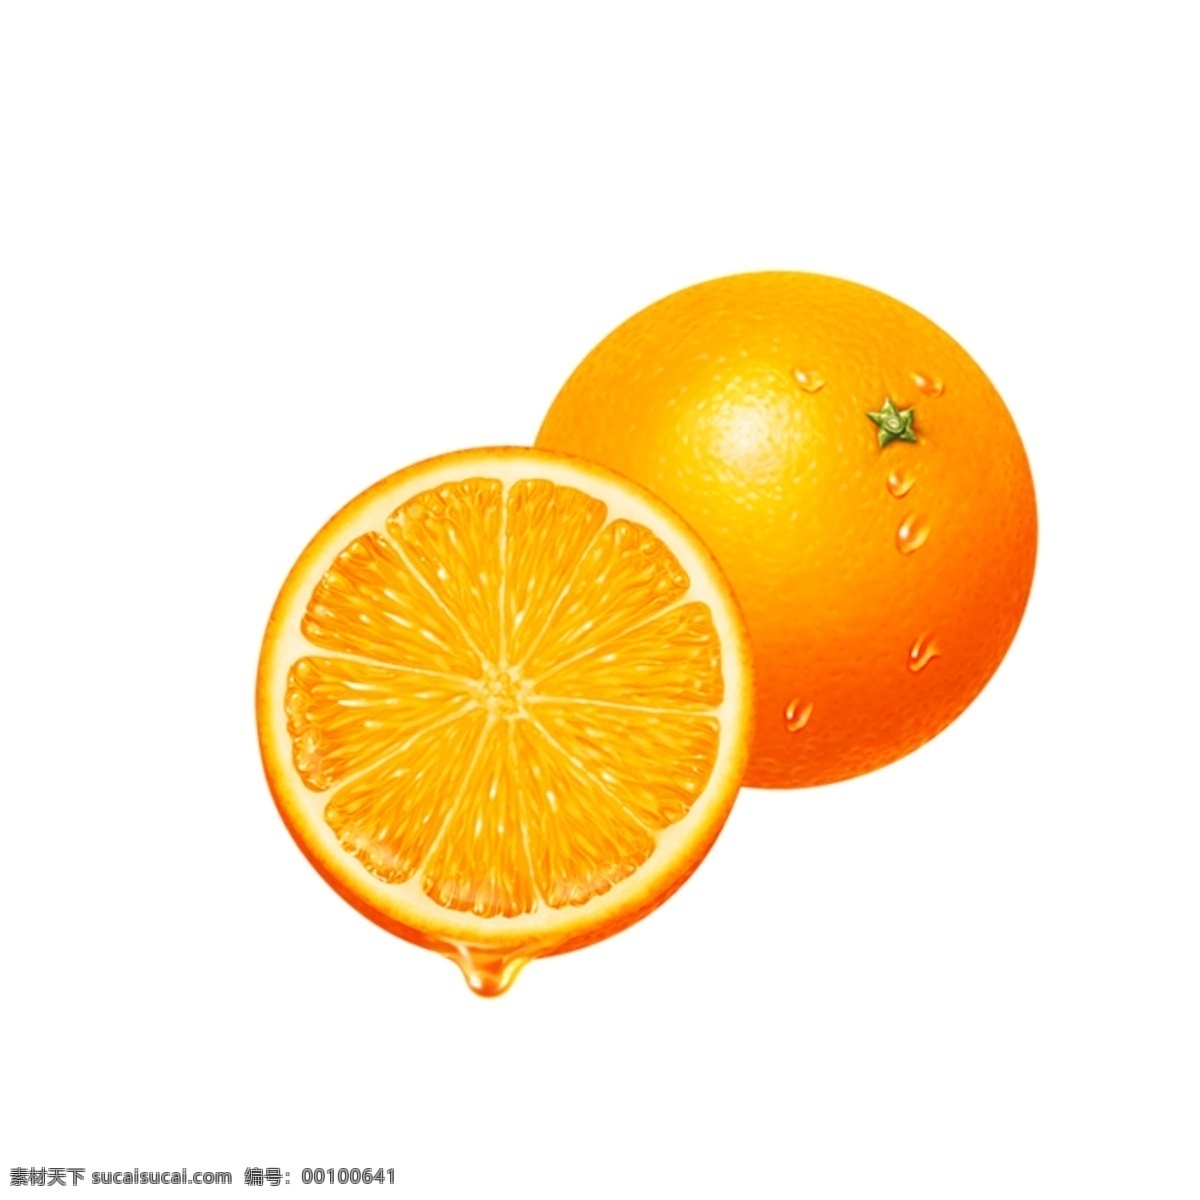 香橙 水果素材下载 水果模板下载 水果 葡萄 芒果 香蕉 草莓 橙子 西瓜 哈密瓜 苹果 椰子 杨桃 猕猴桃 甘蔗 杨梅 荔枝 分层 源文件